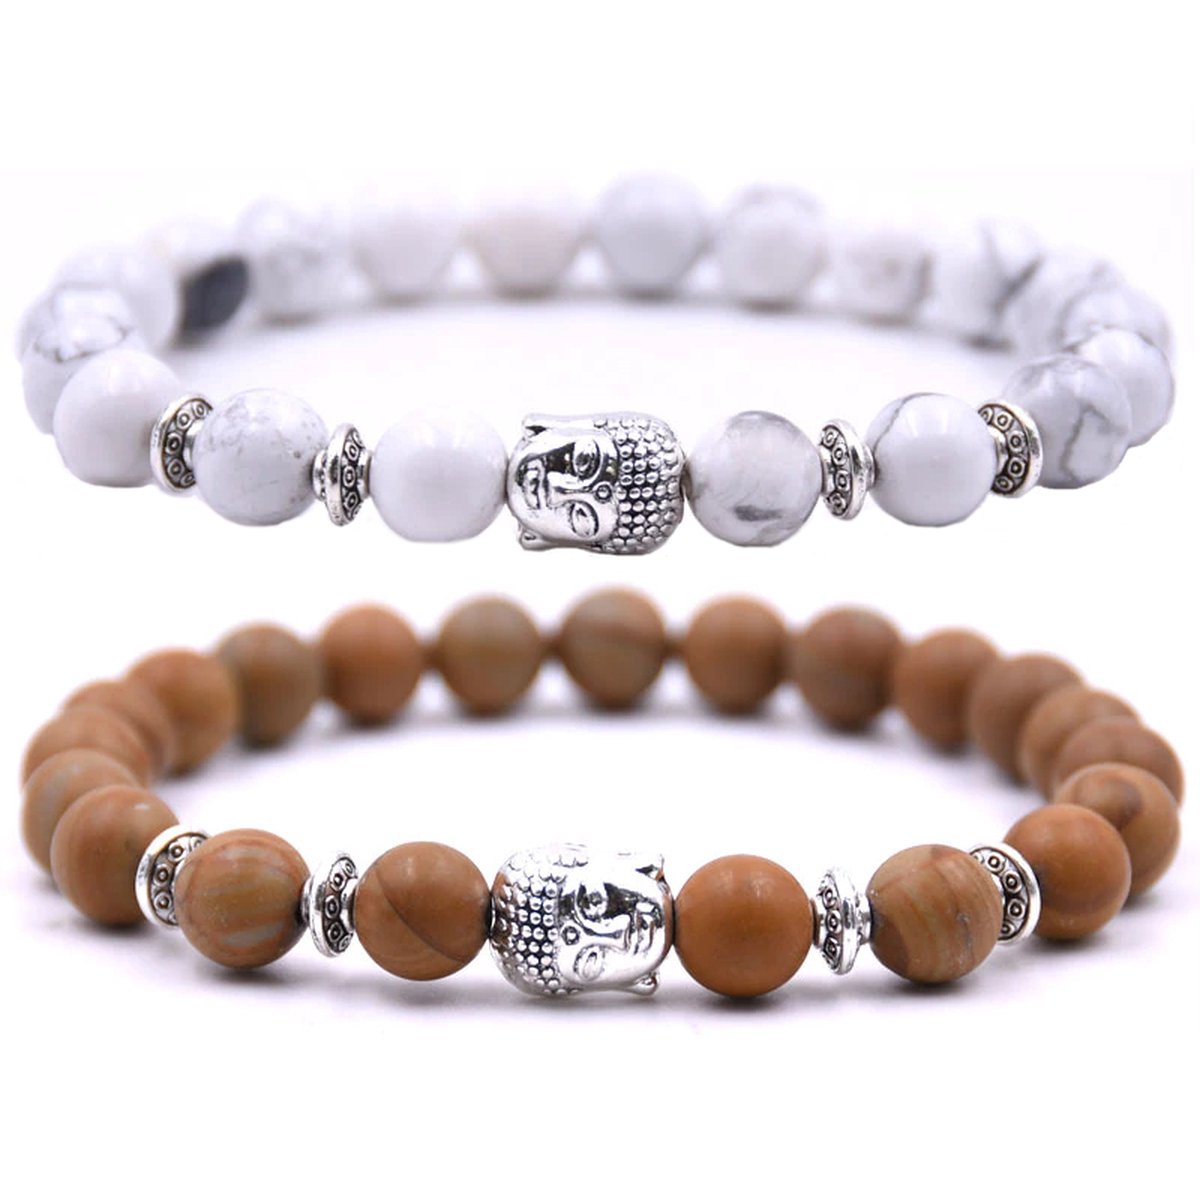 Kralen armband buddha bedel (boedha) - Armband dames / heren / unisex - Natuursteen kralen bandje - Elastiek 19 cm - 8mm stenen - Armbandenset (2 stuks) - Wit marmer & bruin